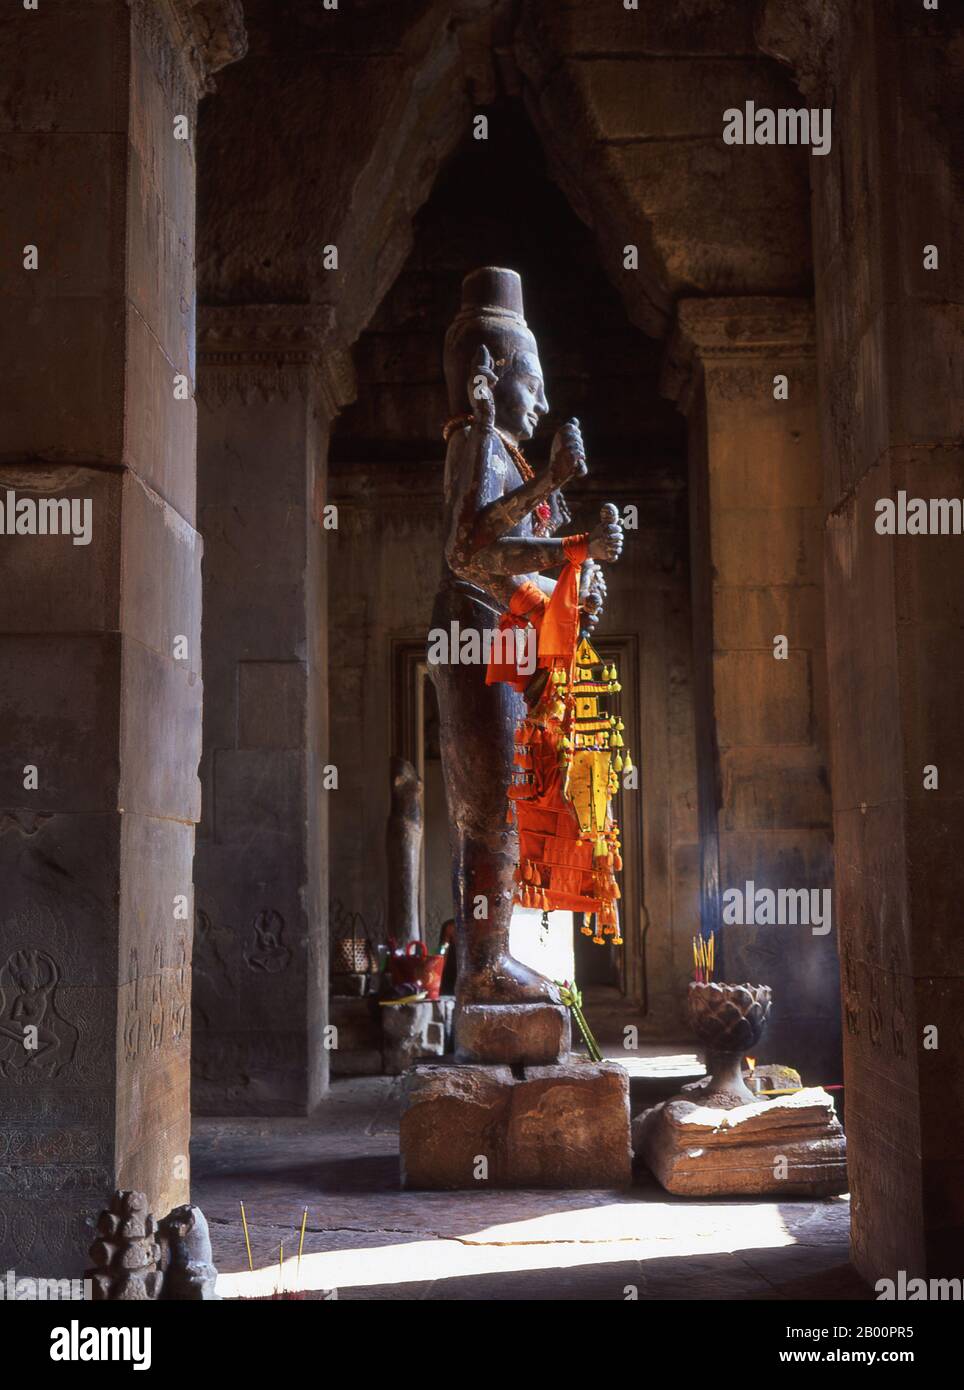 Kambodscha: Eine acht bewaffnete Vishnu Statue in Angkor Wat. Angkor Wat wurde für König Suryavarman II. (Regierte 1113-50) im frühen 12. Jahrhundert als Staatstempel und Hauptstadt erbaut. Als besterhaltener Tempel am Standort Angkor ist er der einzige, der seit seiner Gründung ein bedeutendes religiöses Zentrum geblieben ist – zuerst Hindu, dem gott Vishnu gewidmet, dann Buddhist. Es ist das größte religiöse Gebäude der Welt. Der Tempel ist an der Spitze der hohen klassischen Stil der Khmer-Architektur. Es ist zu einem Symbol Kambodschas geworden, das auf seiner Nationalflagge erscheint. Stockfoto